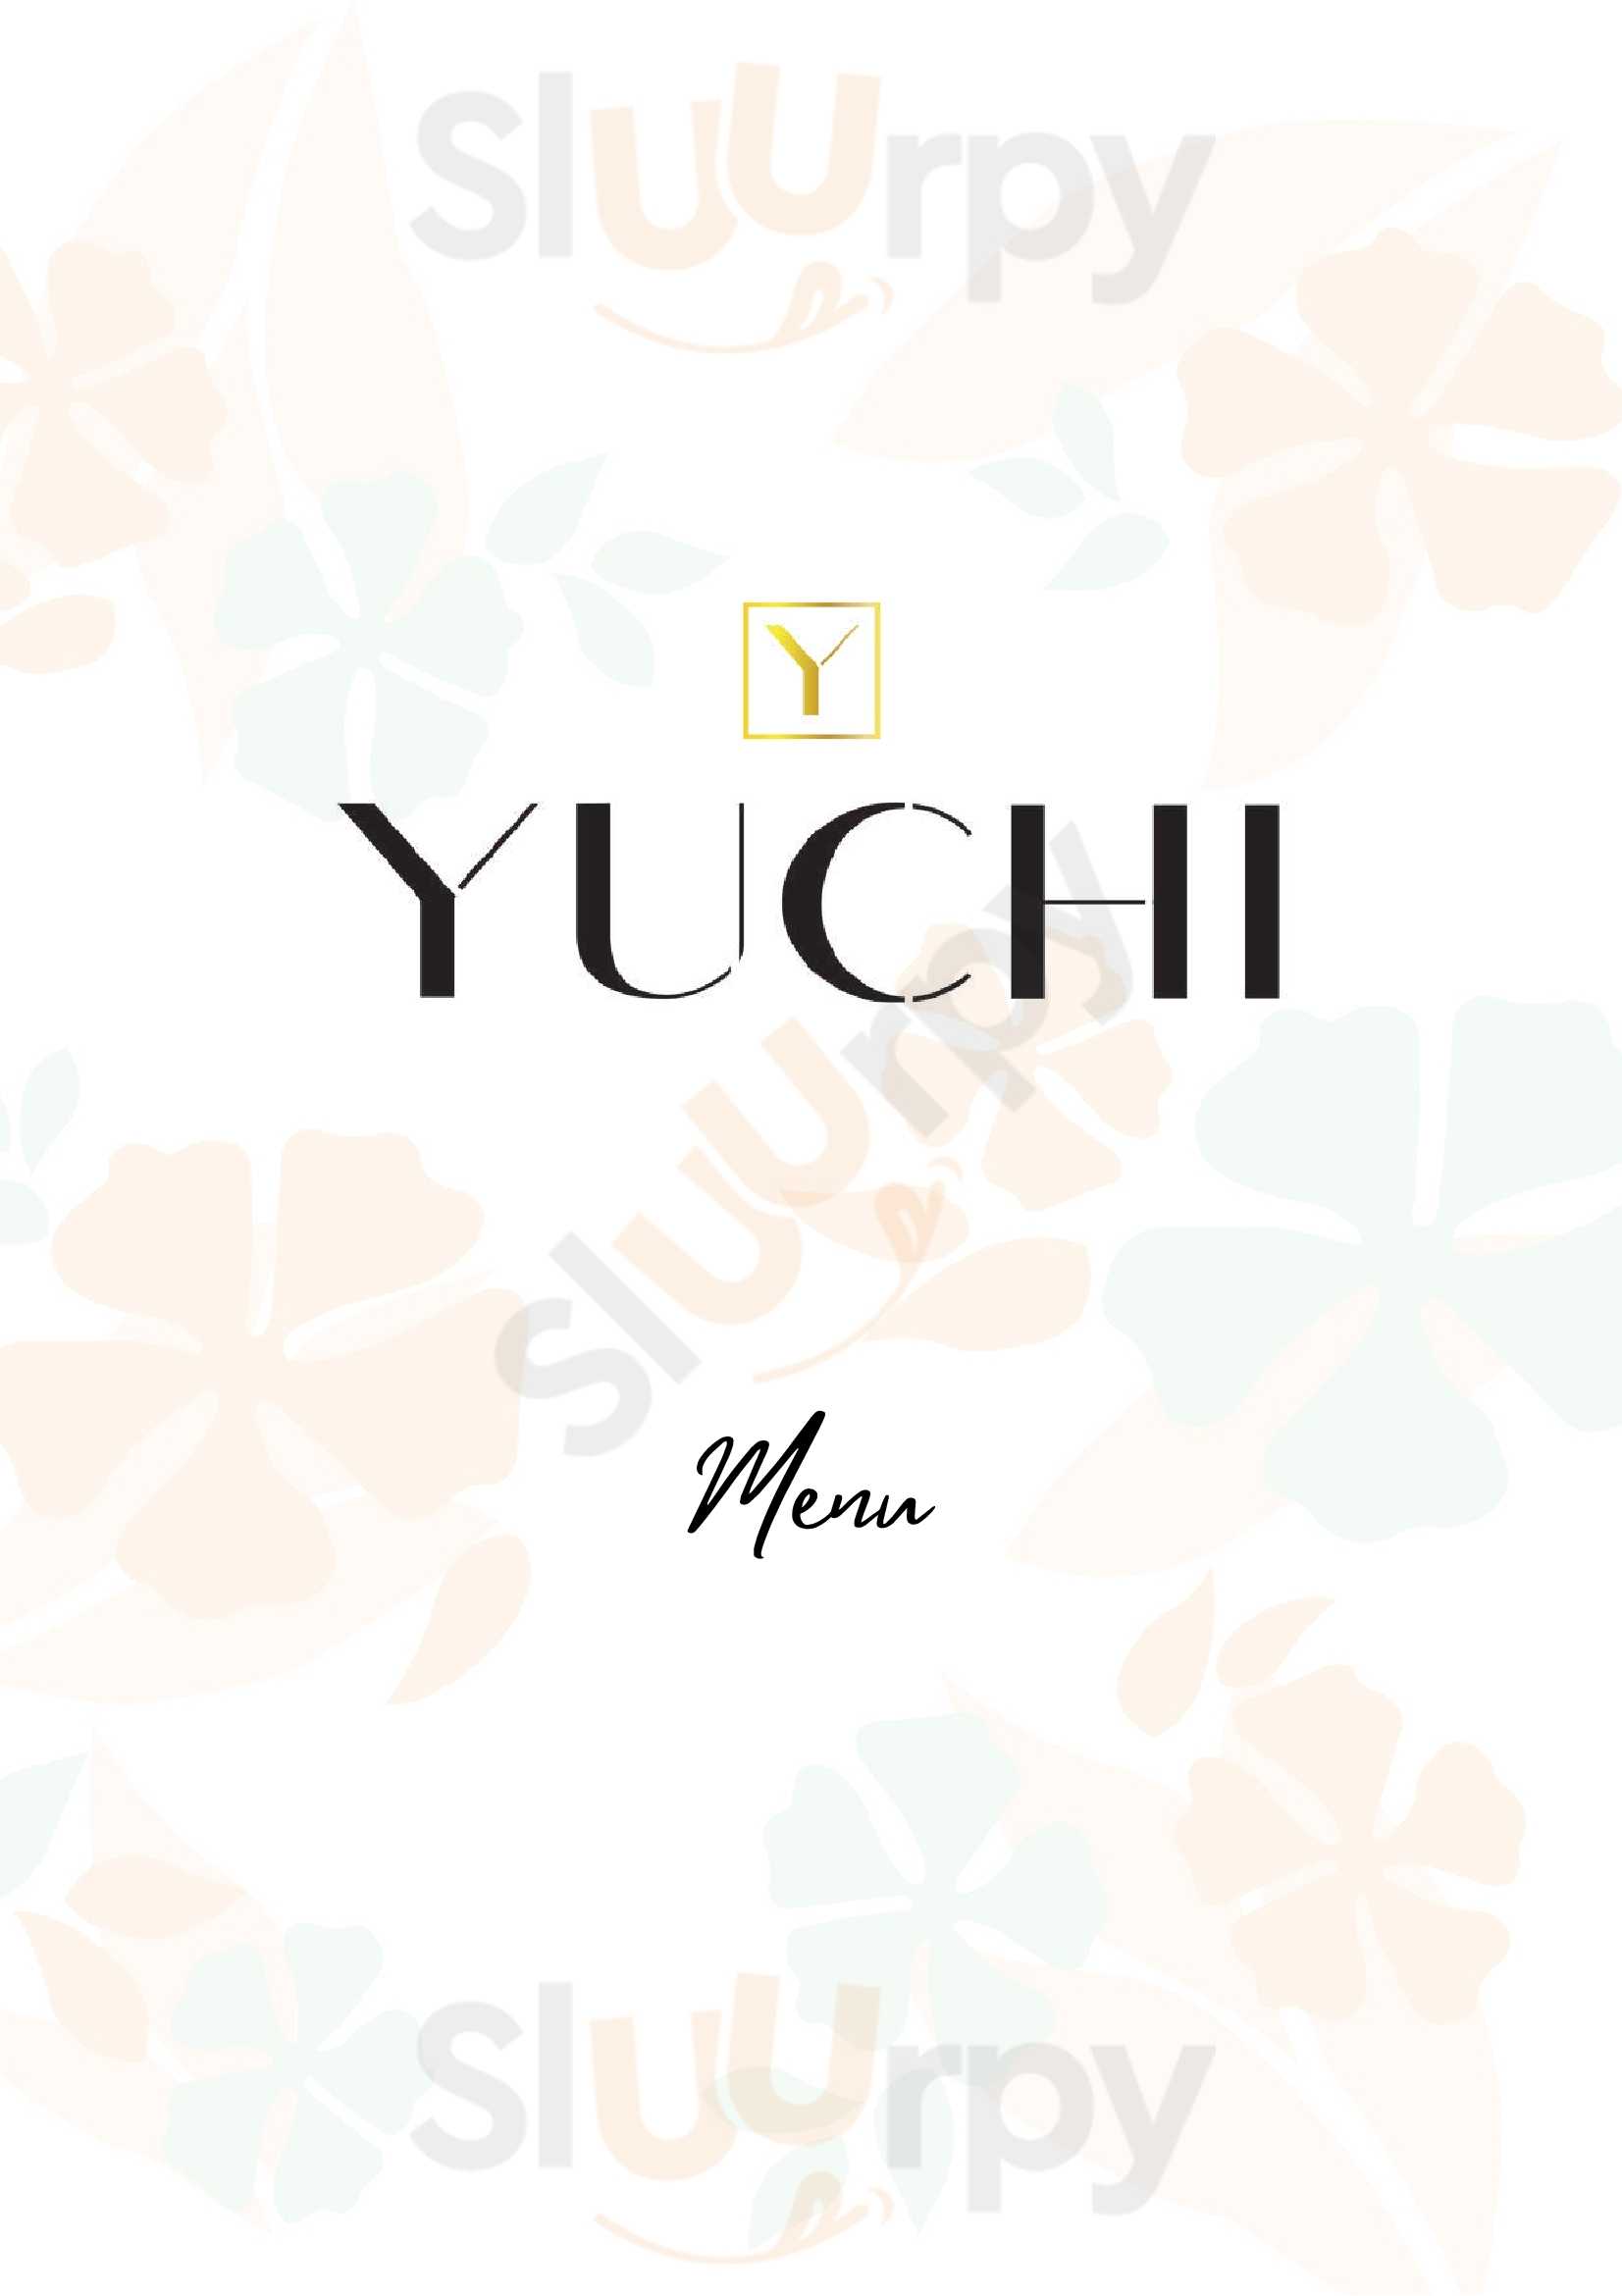 ‪yuchi Cafe‬ دُبي Menu - 1